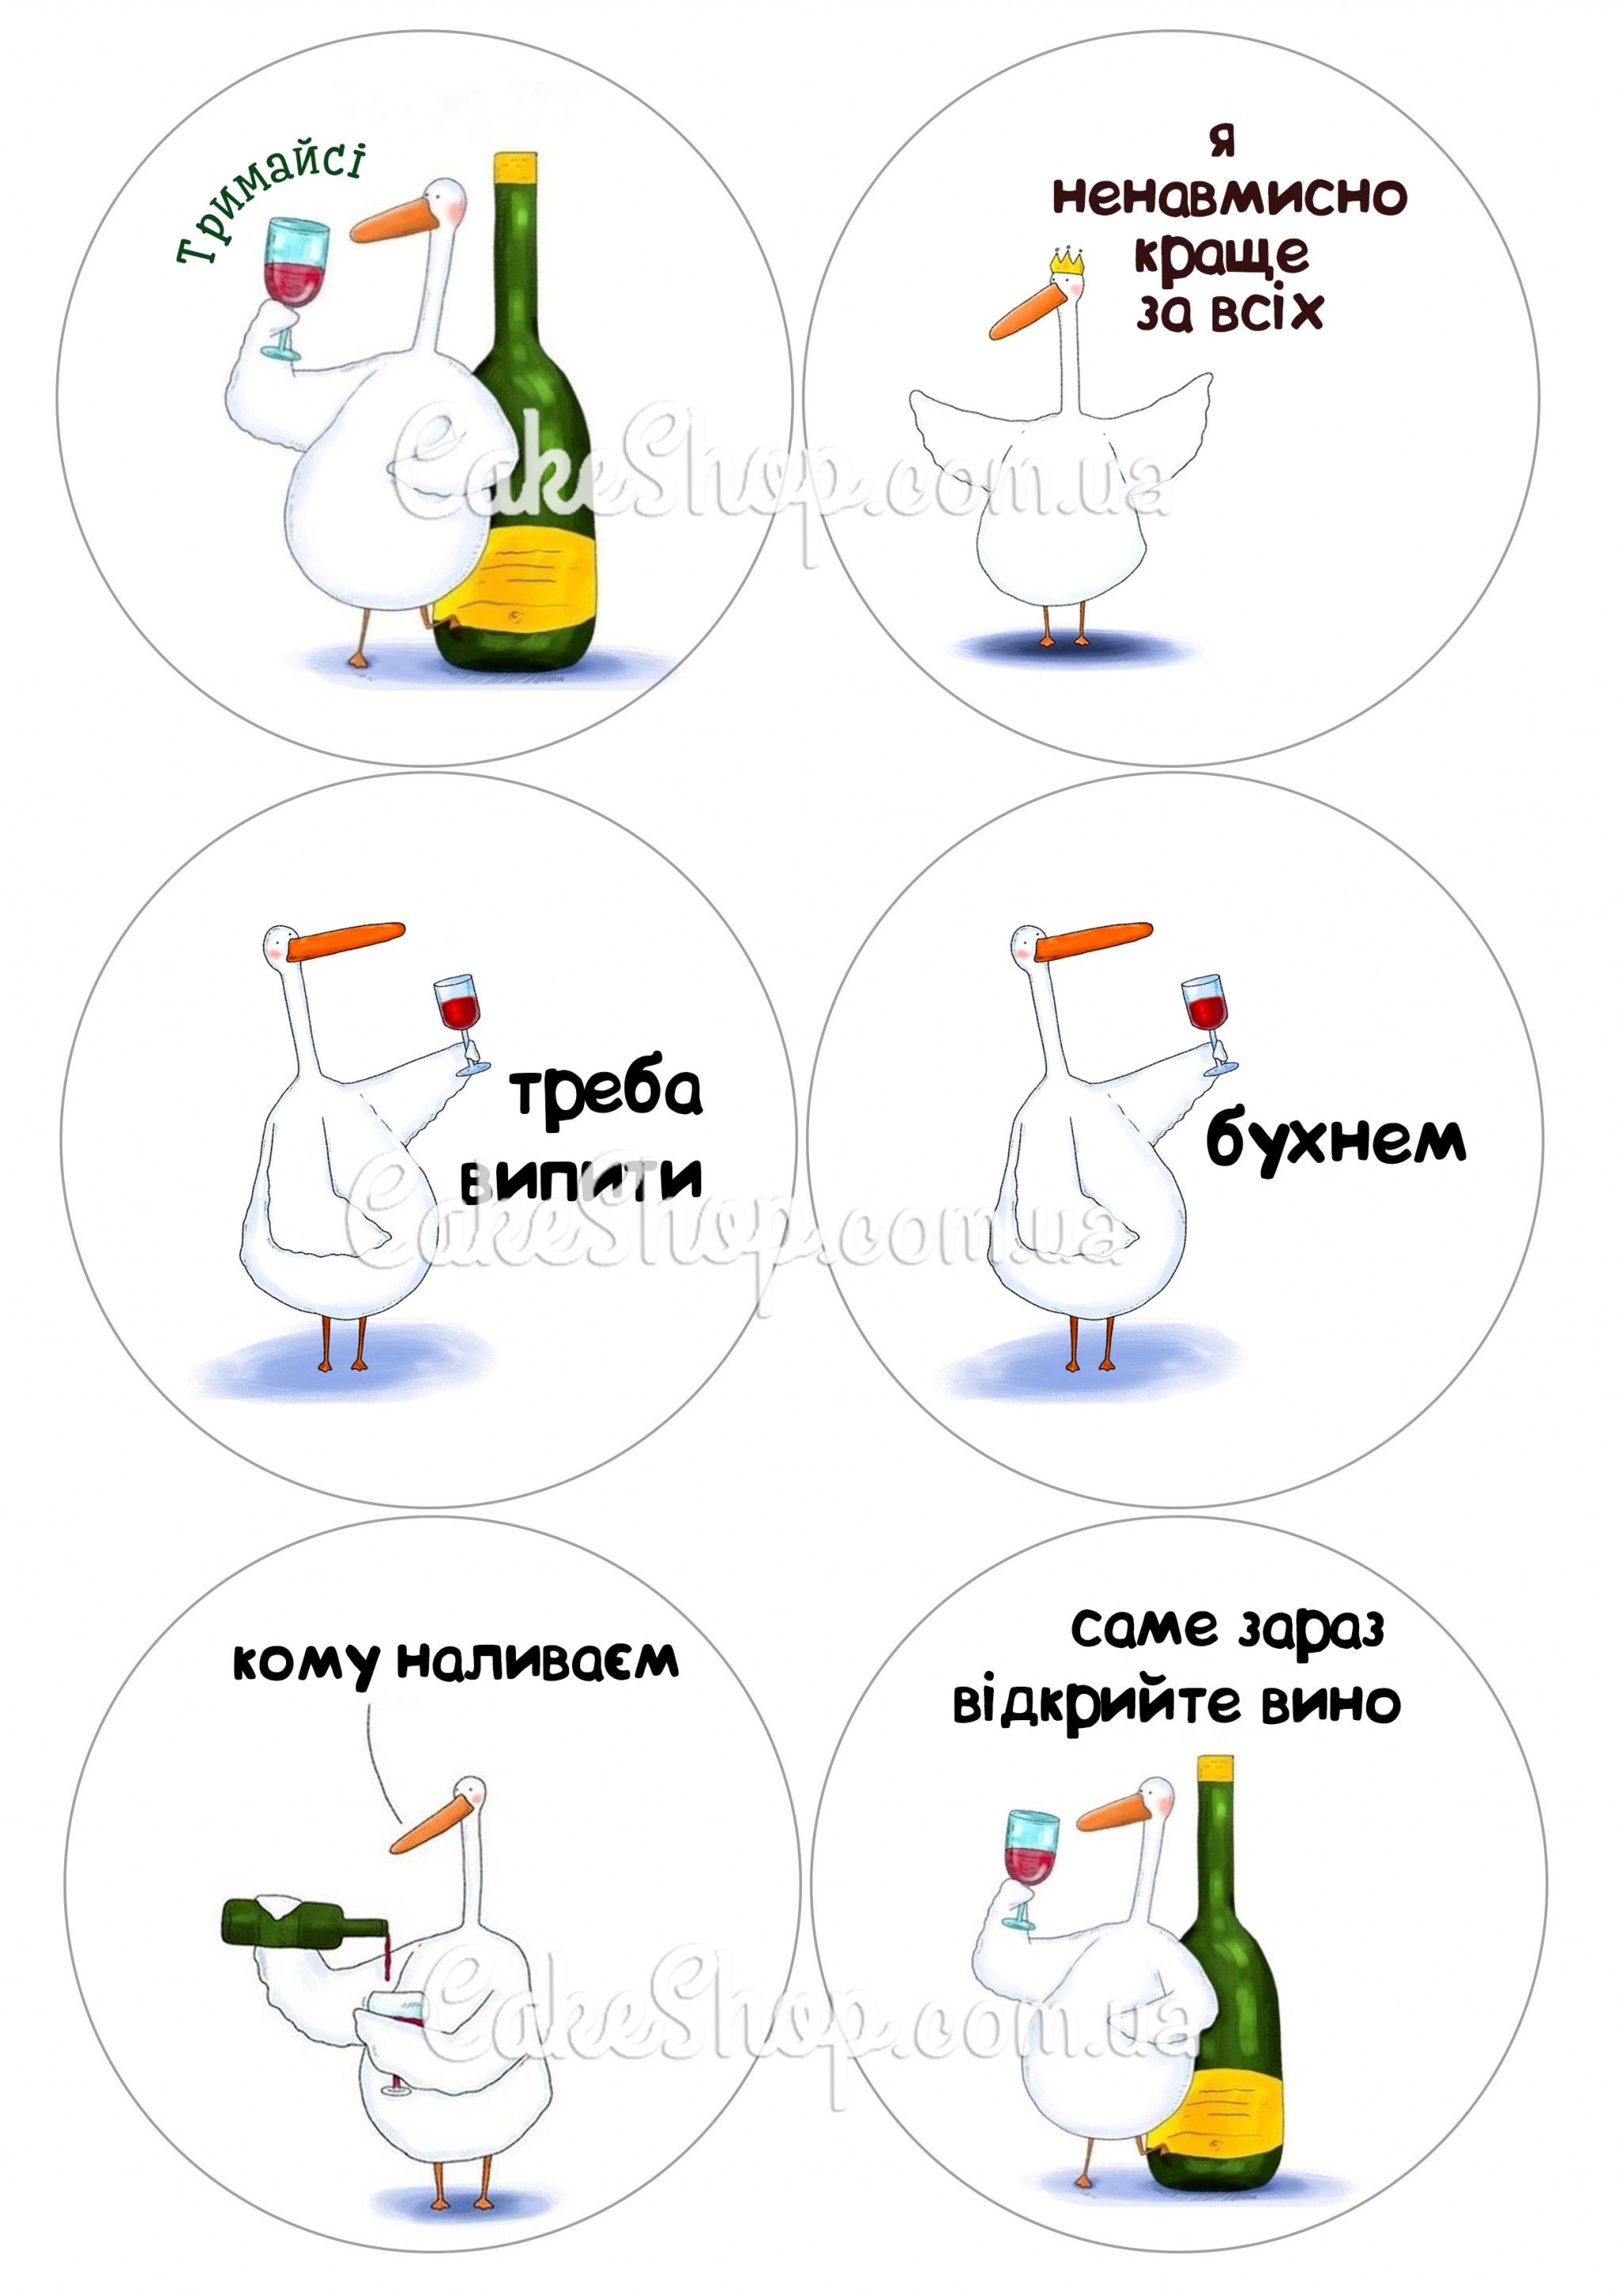 ⋗ Вафельная картинка  Гусь 2 купить в Украине ➛ CakeShop.com.ua, фото